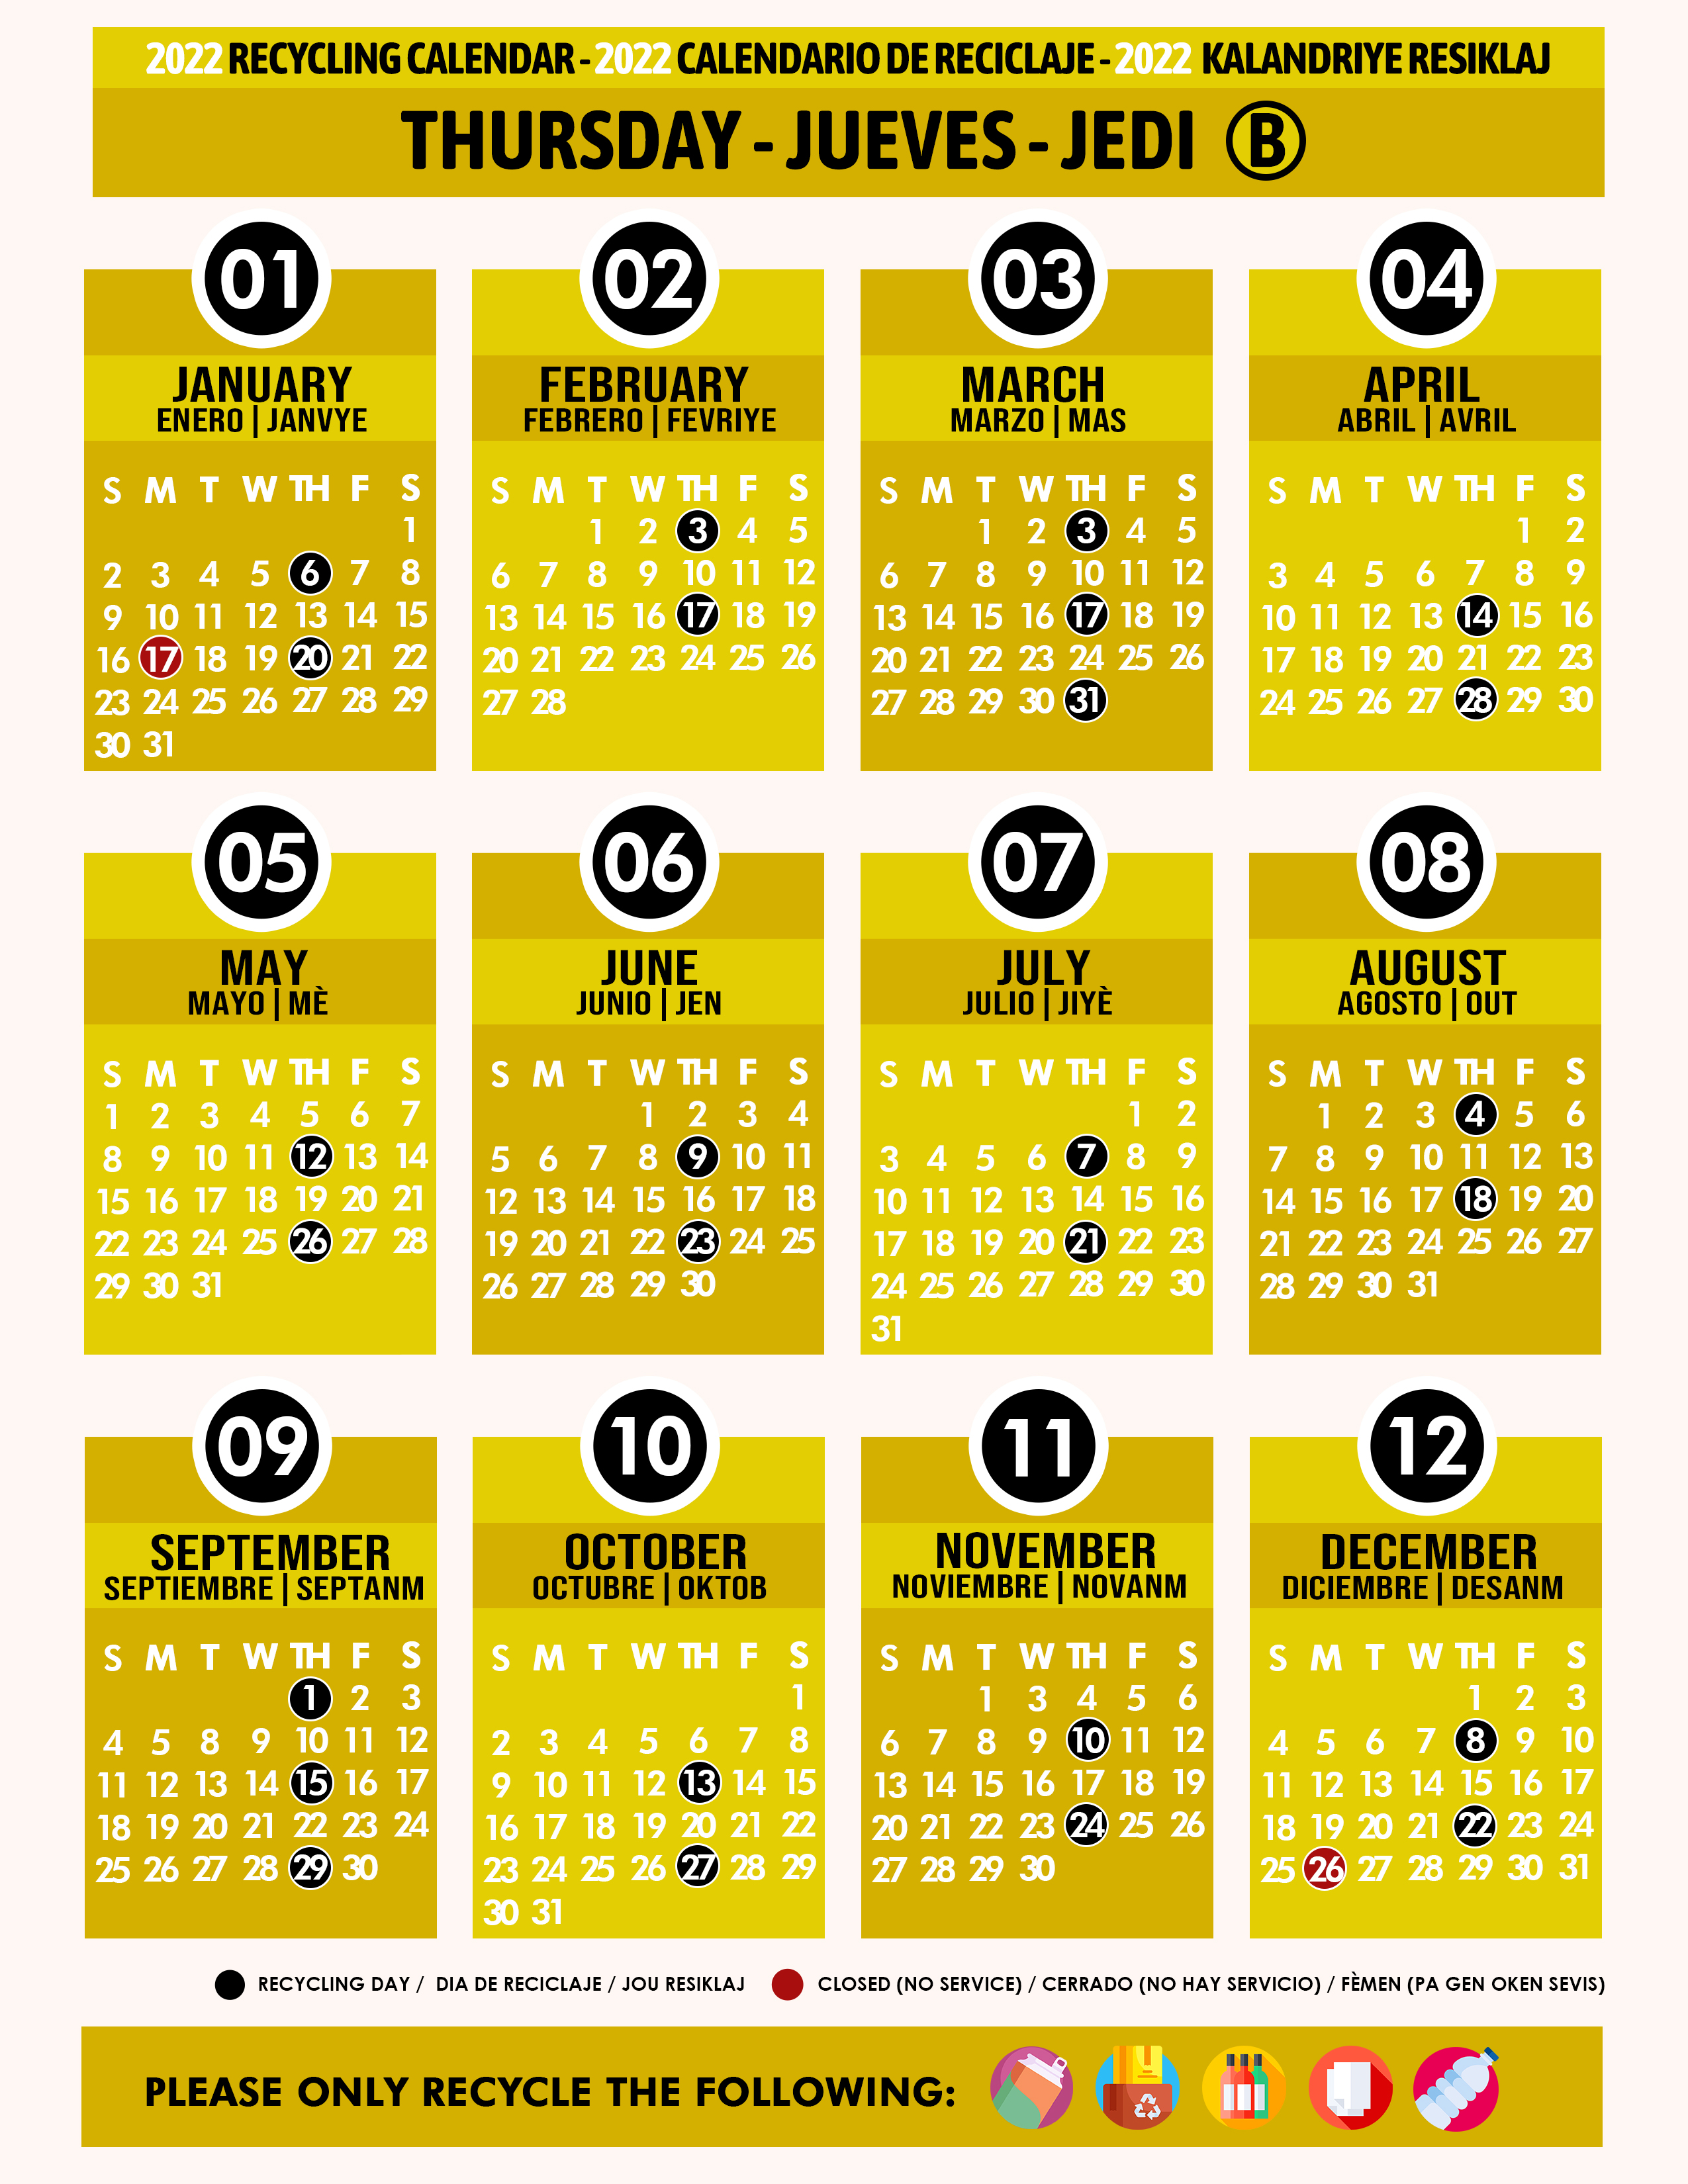 Miami Dade Recycling Calendar 2022 Recycling Calendar 2022 Thursday B Yellow - Miami